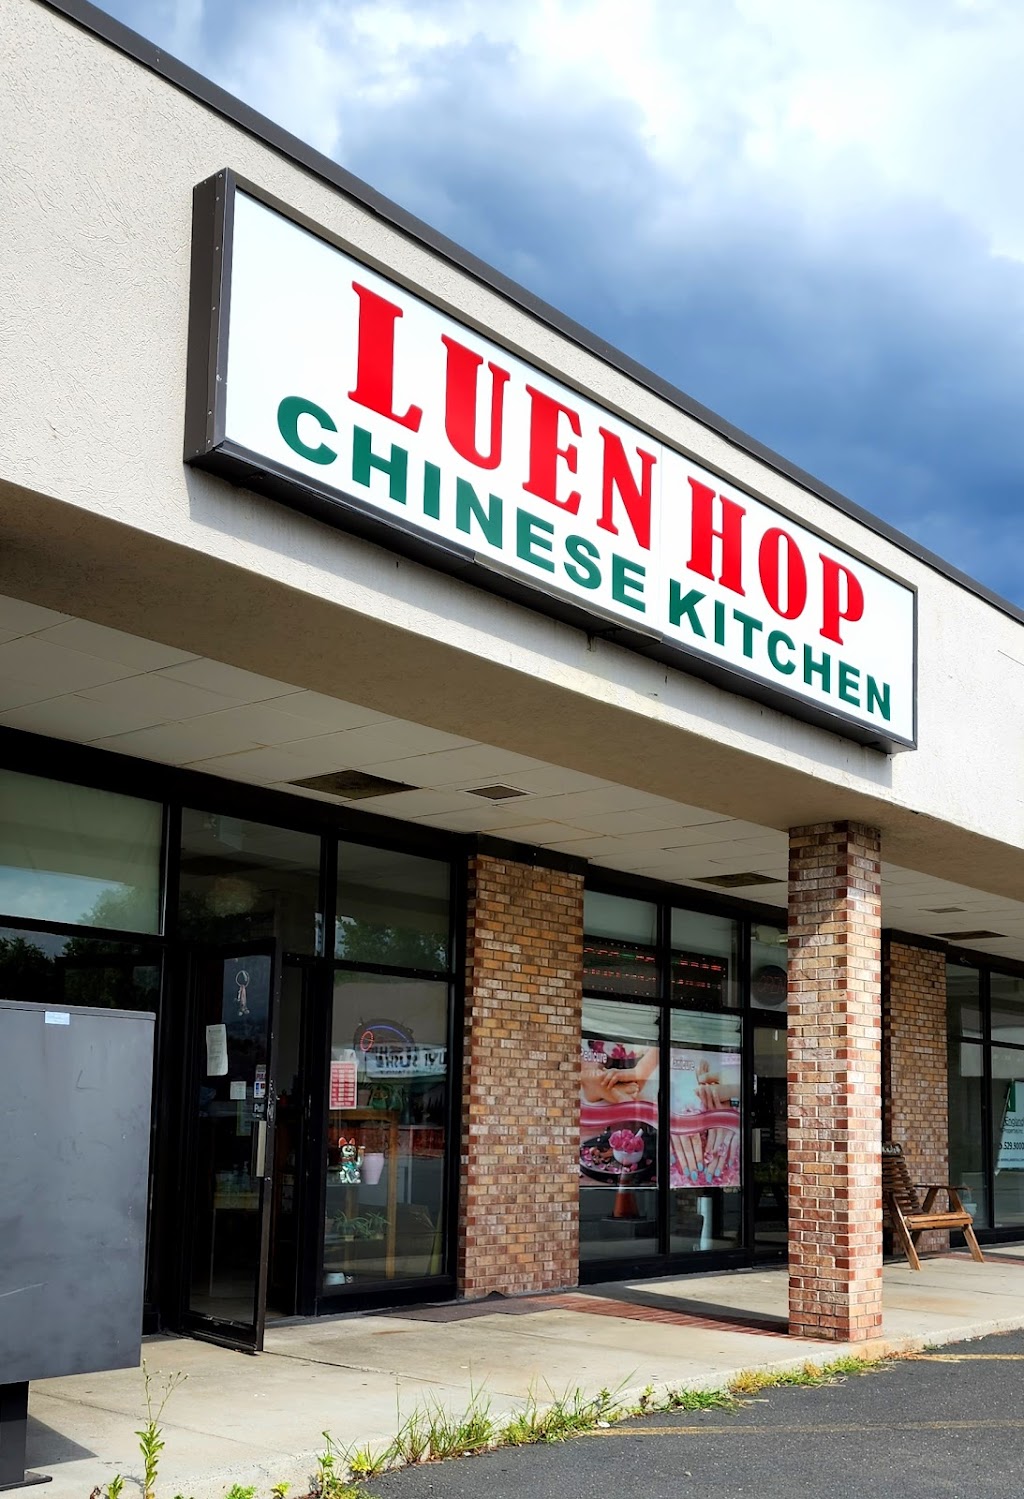 Luen Hop Chinese Kitchen | 34 Shunpike Rd #14B, Cromwell, CT 06416 | Phone: (860) 635-4108